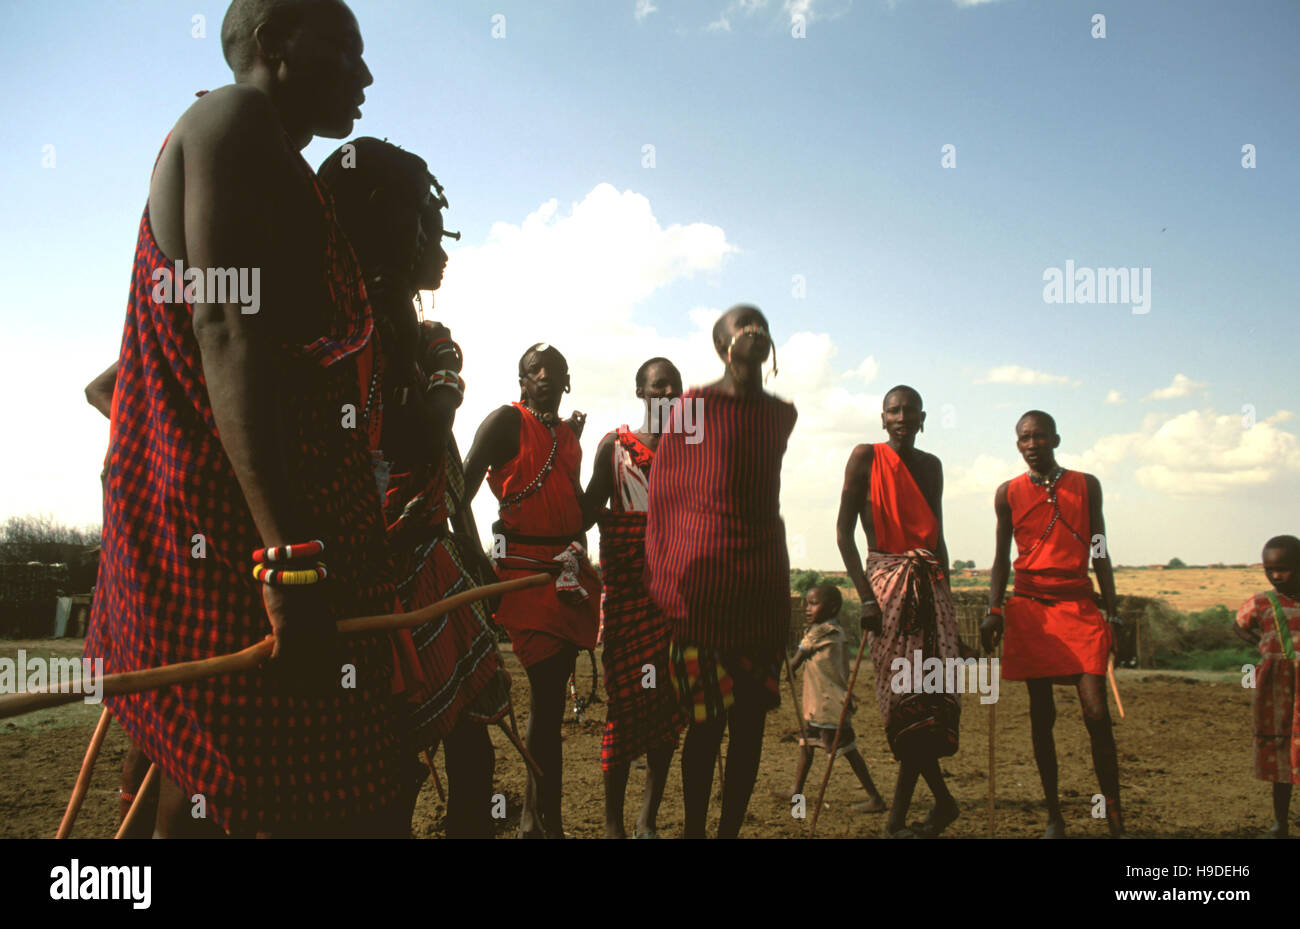 Halb-nomadischen Massai in Masai Mara National Reserve Kenia Afrika gelegen. Seine Stärke beruhte auf eine militärische Organisation. Während ihre Nom Stockfoto